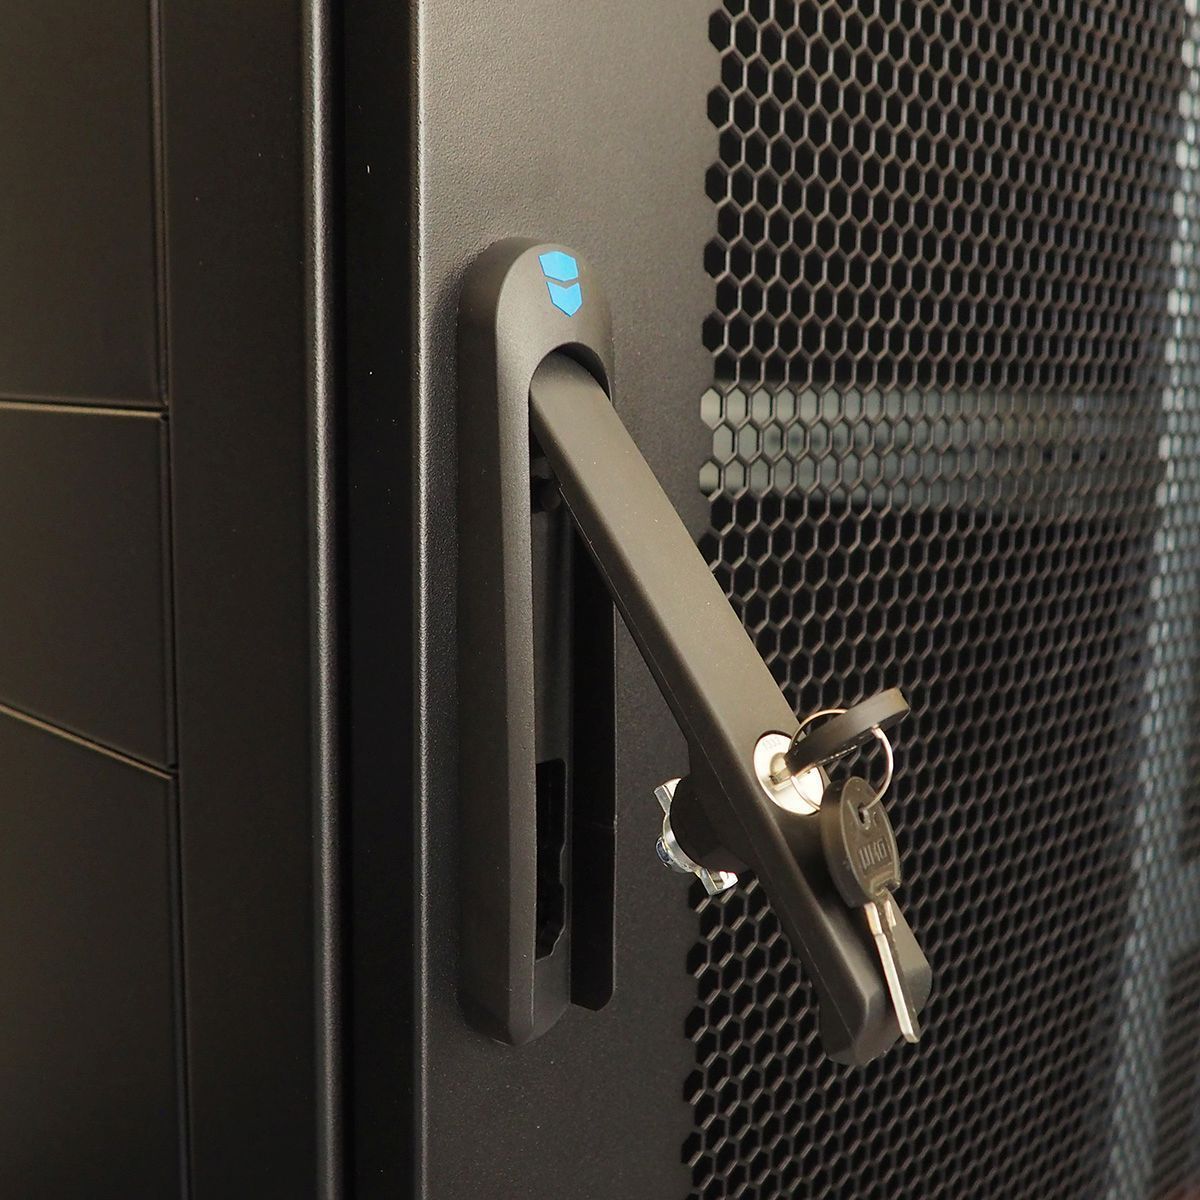 Шкаф серверный напольный 42U (800 × 1000) двойные перфорированные двери 2 шт., цвет черный